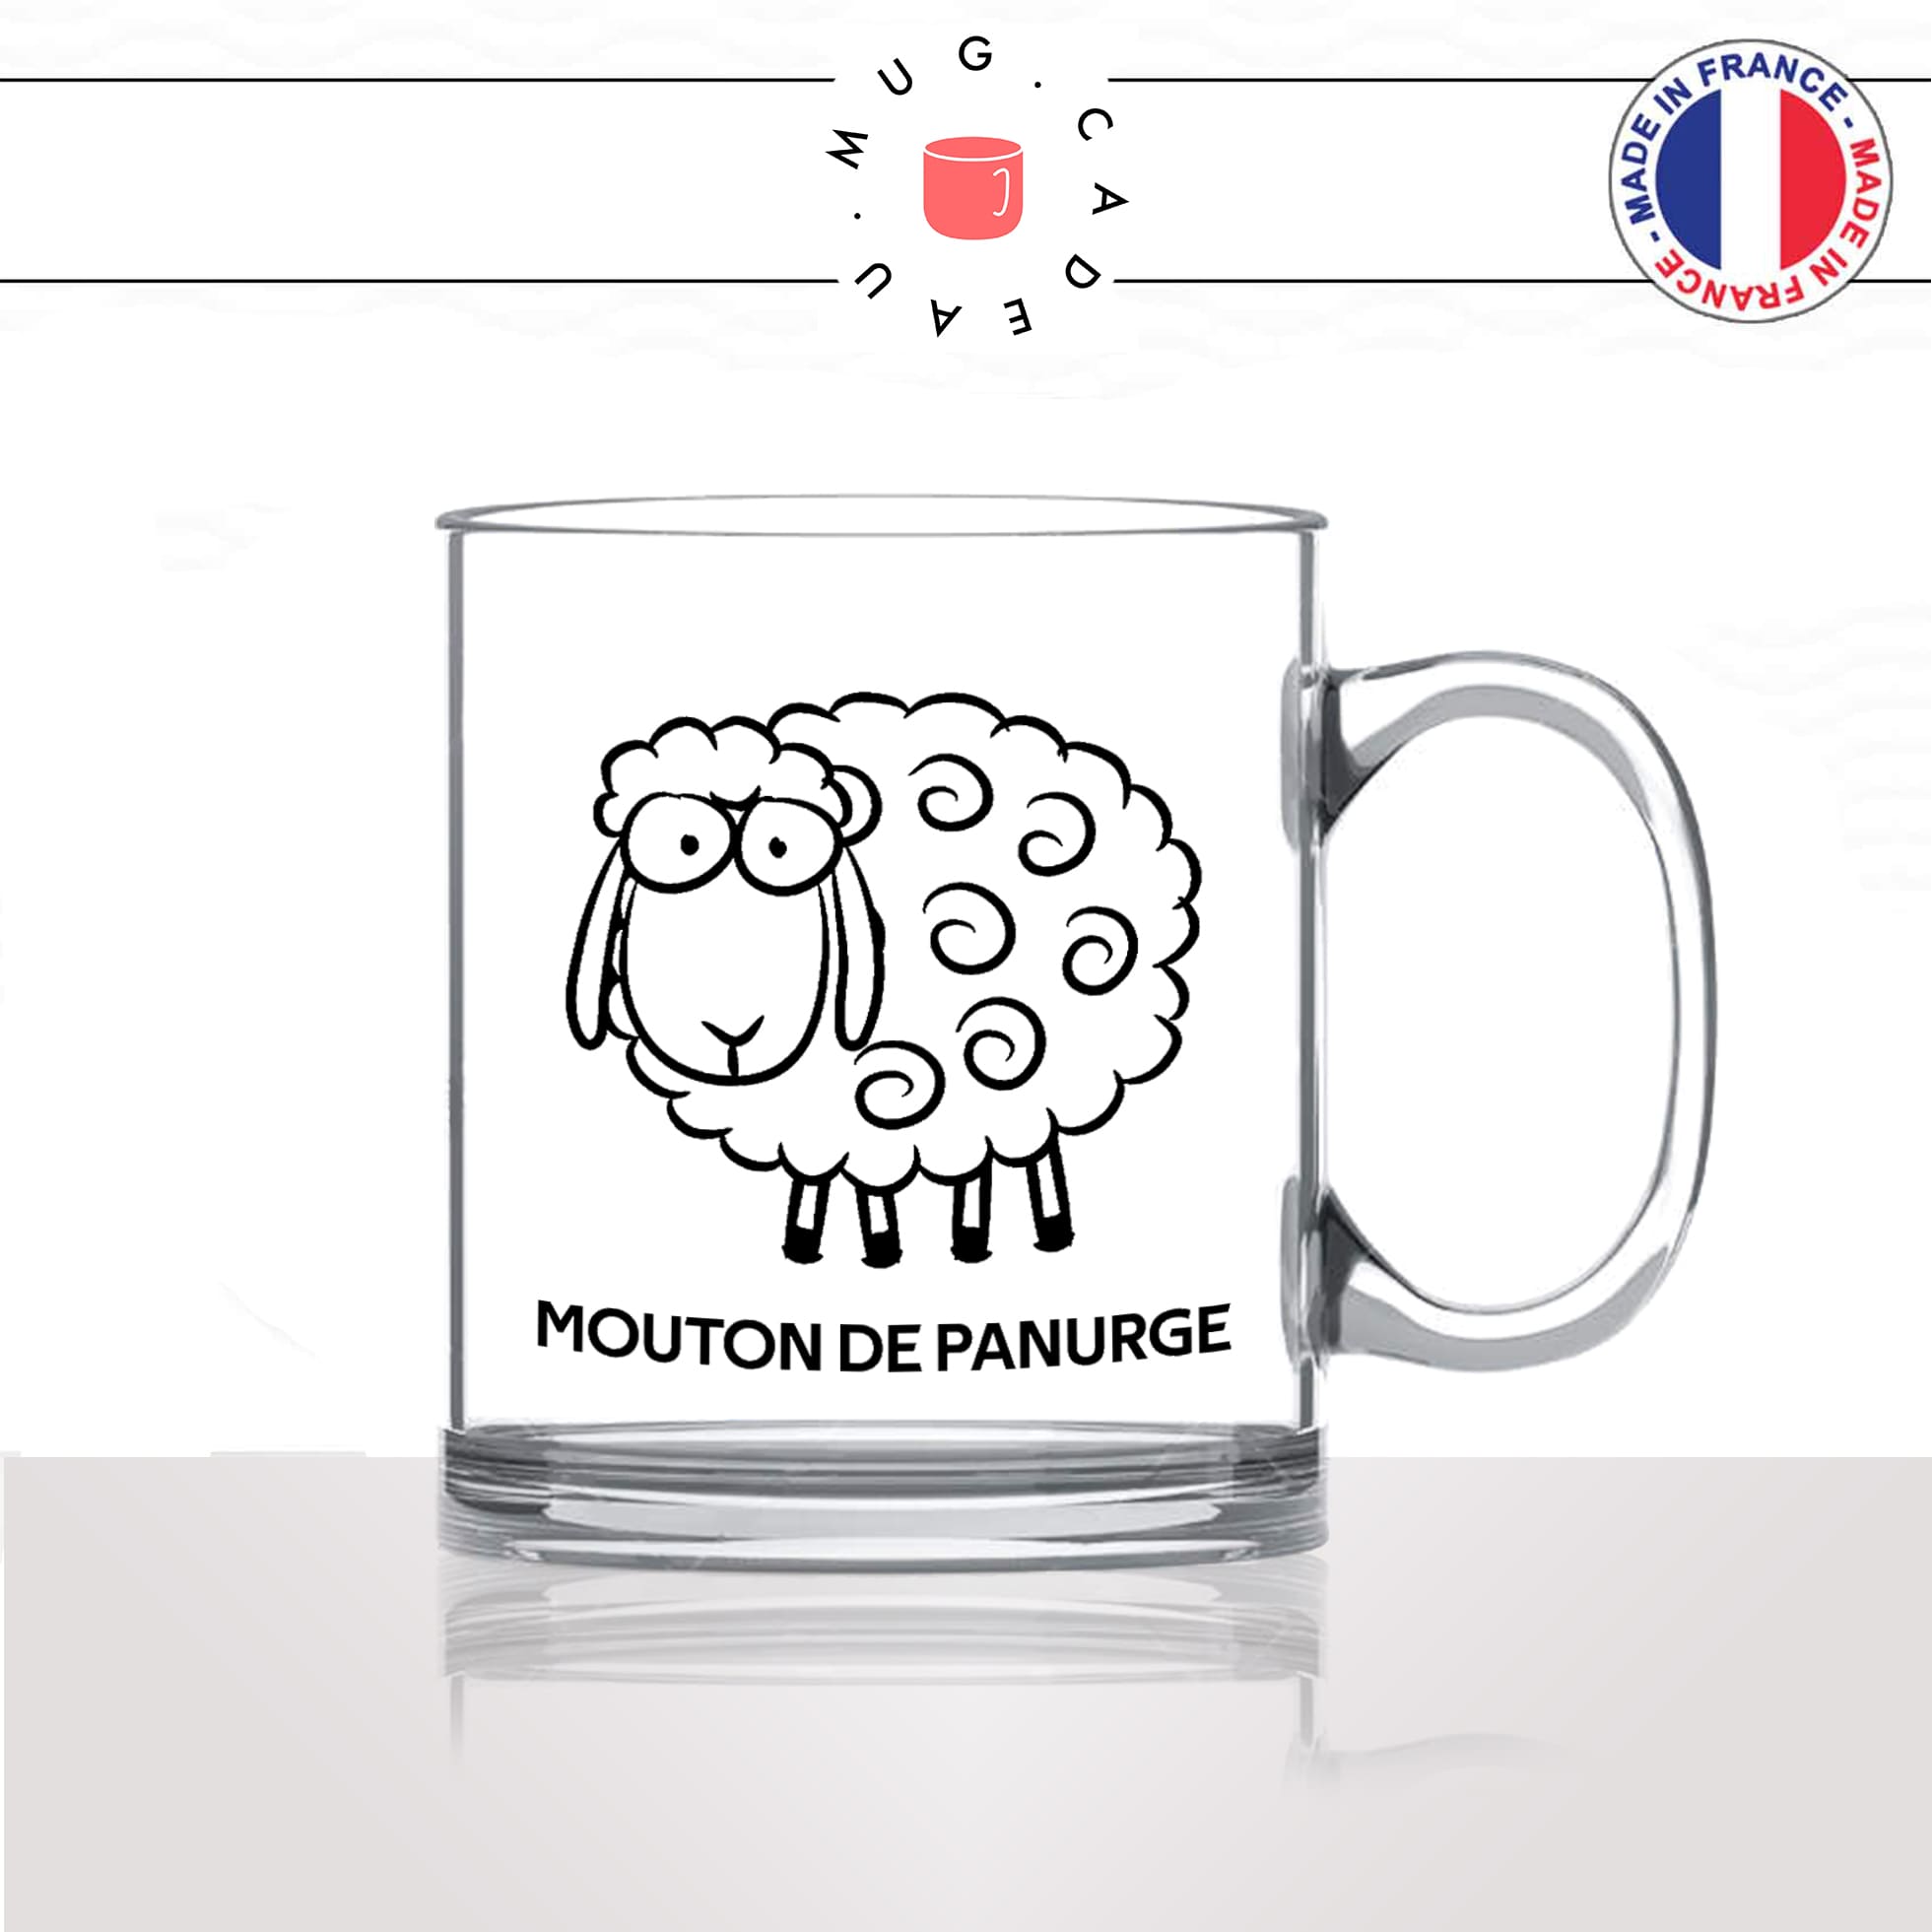 mug-tasse-en-verre-transparent-glass-mouton-de-panurge-suiveur-politique-société-bete-con-gilet-jaune-humour-fun-idée-cadeau-originale-cool2